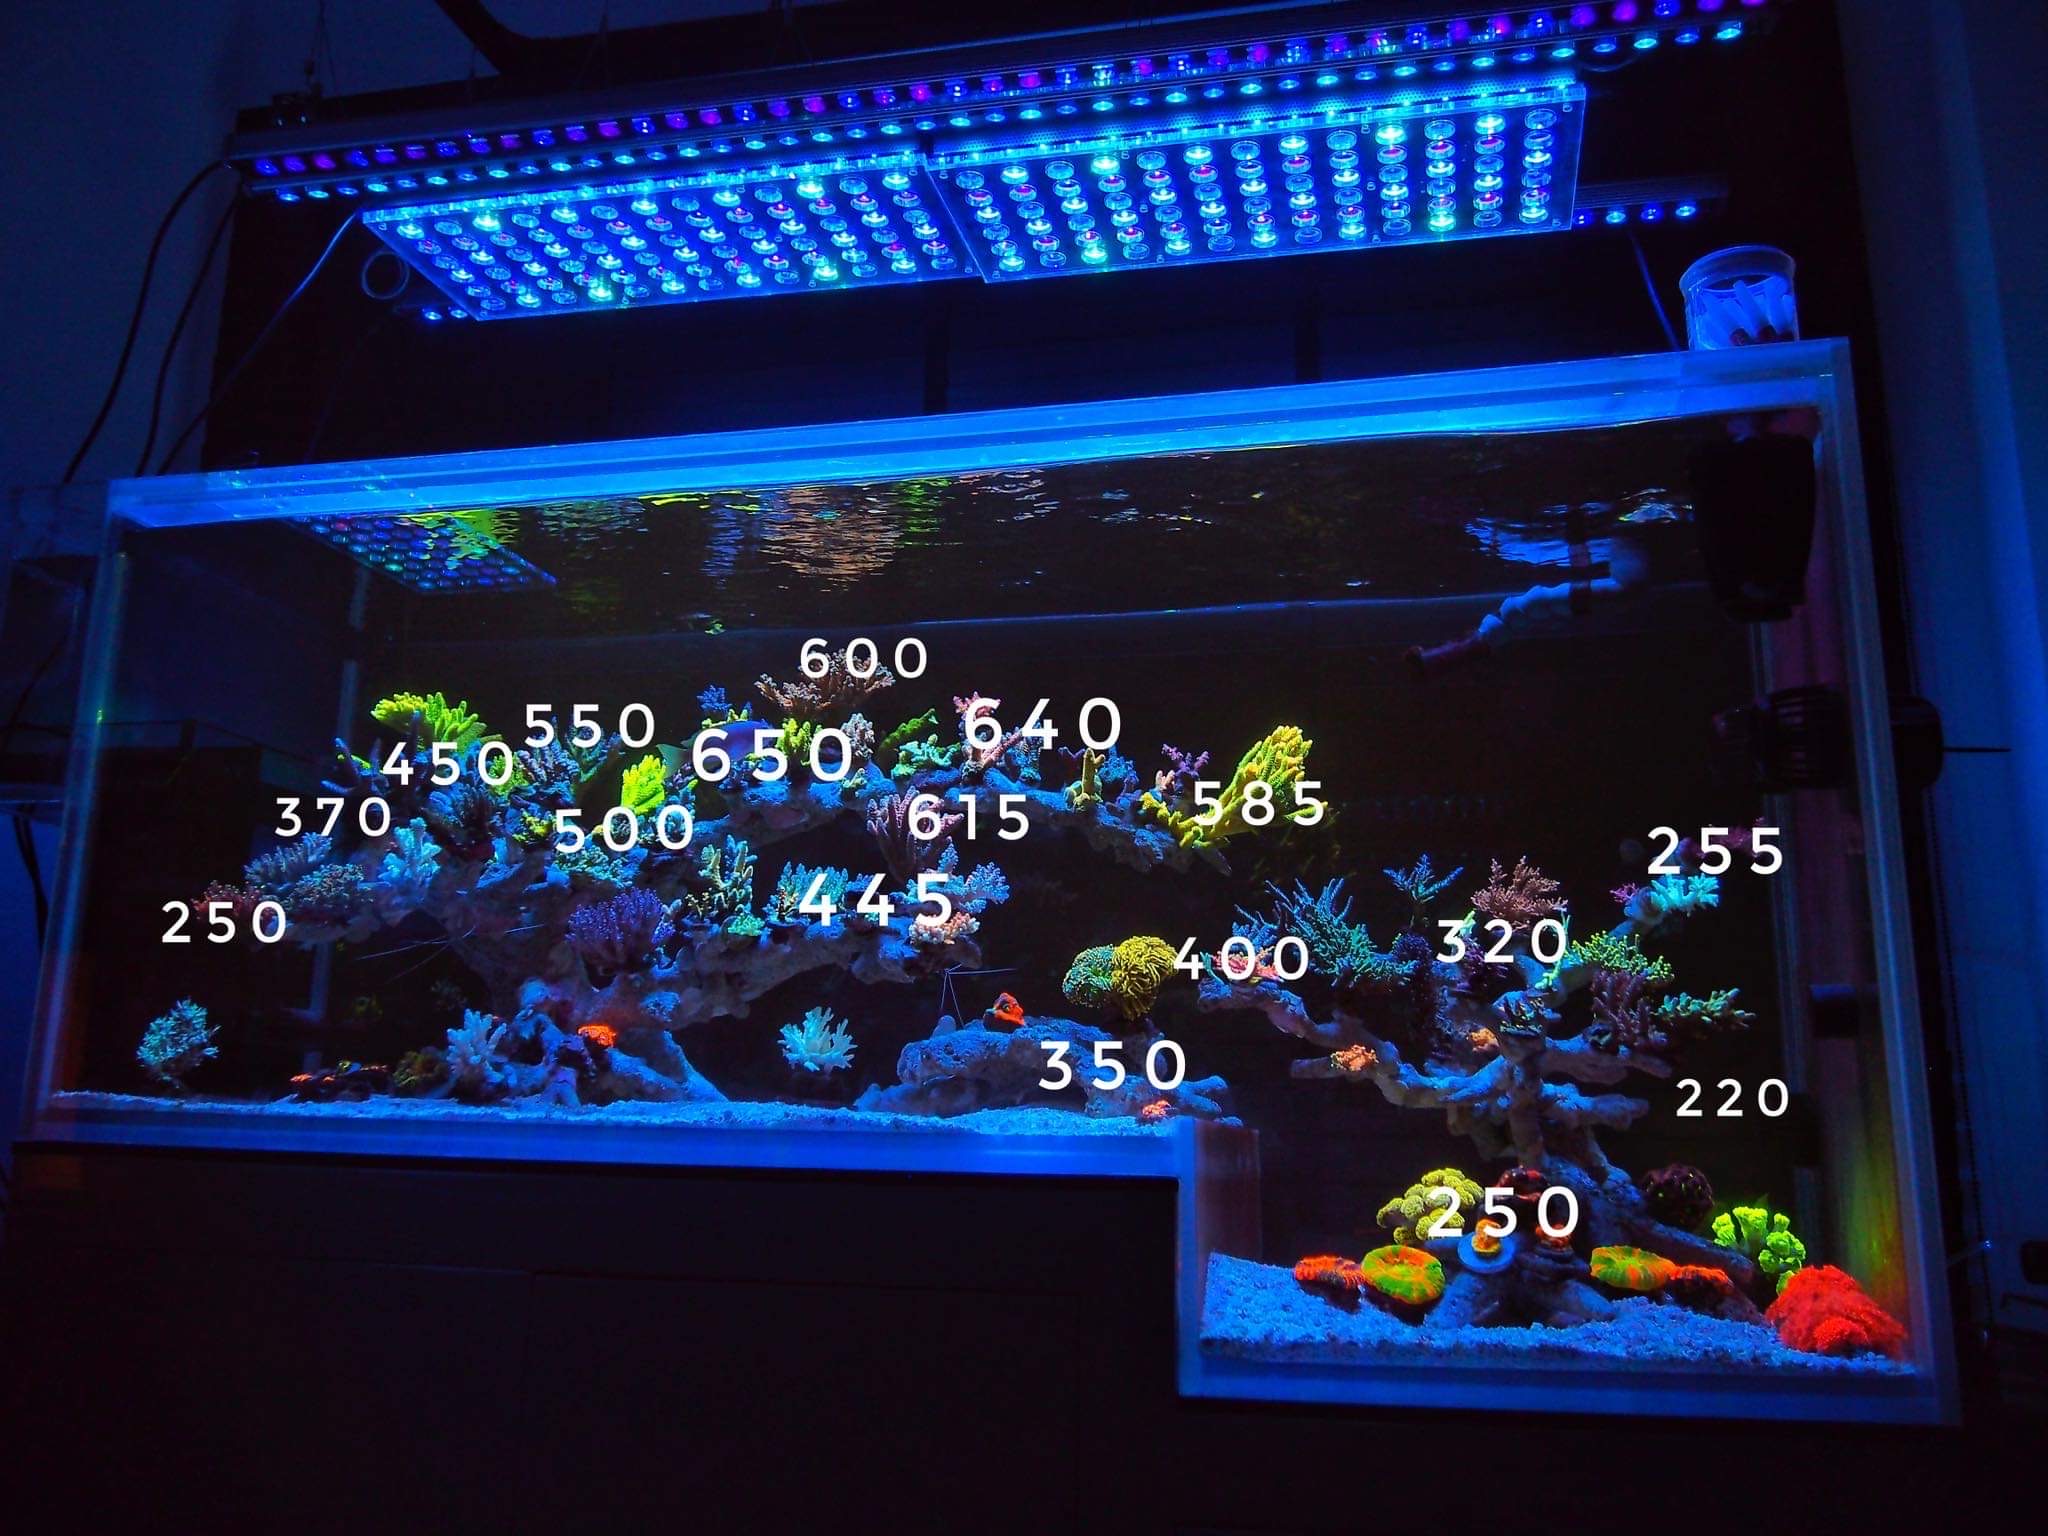 Atlantik icon or3 150 led พิพิธภัณฑ์สัตว์น้ำแนวปะการัง